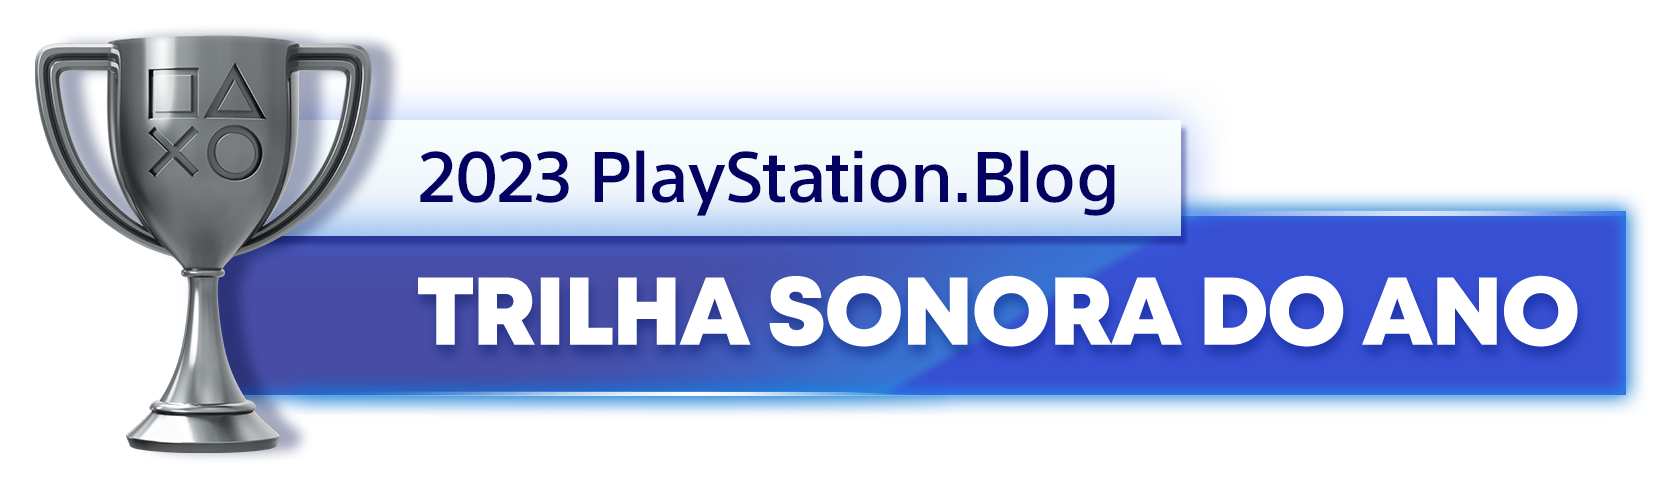  "Troféu de Prata para o vencedor da categoria Trilha Sonora do Ano de 2023 do PlayStation Blog"